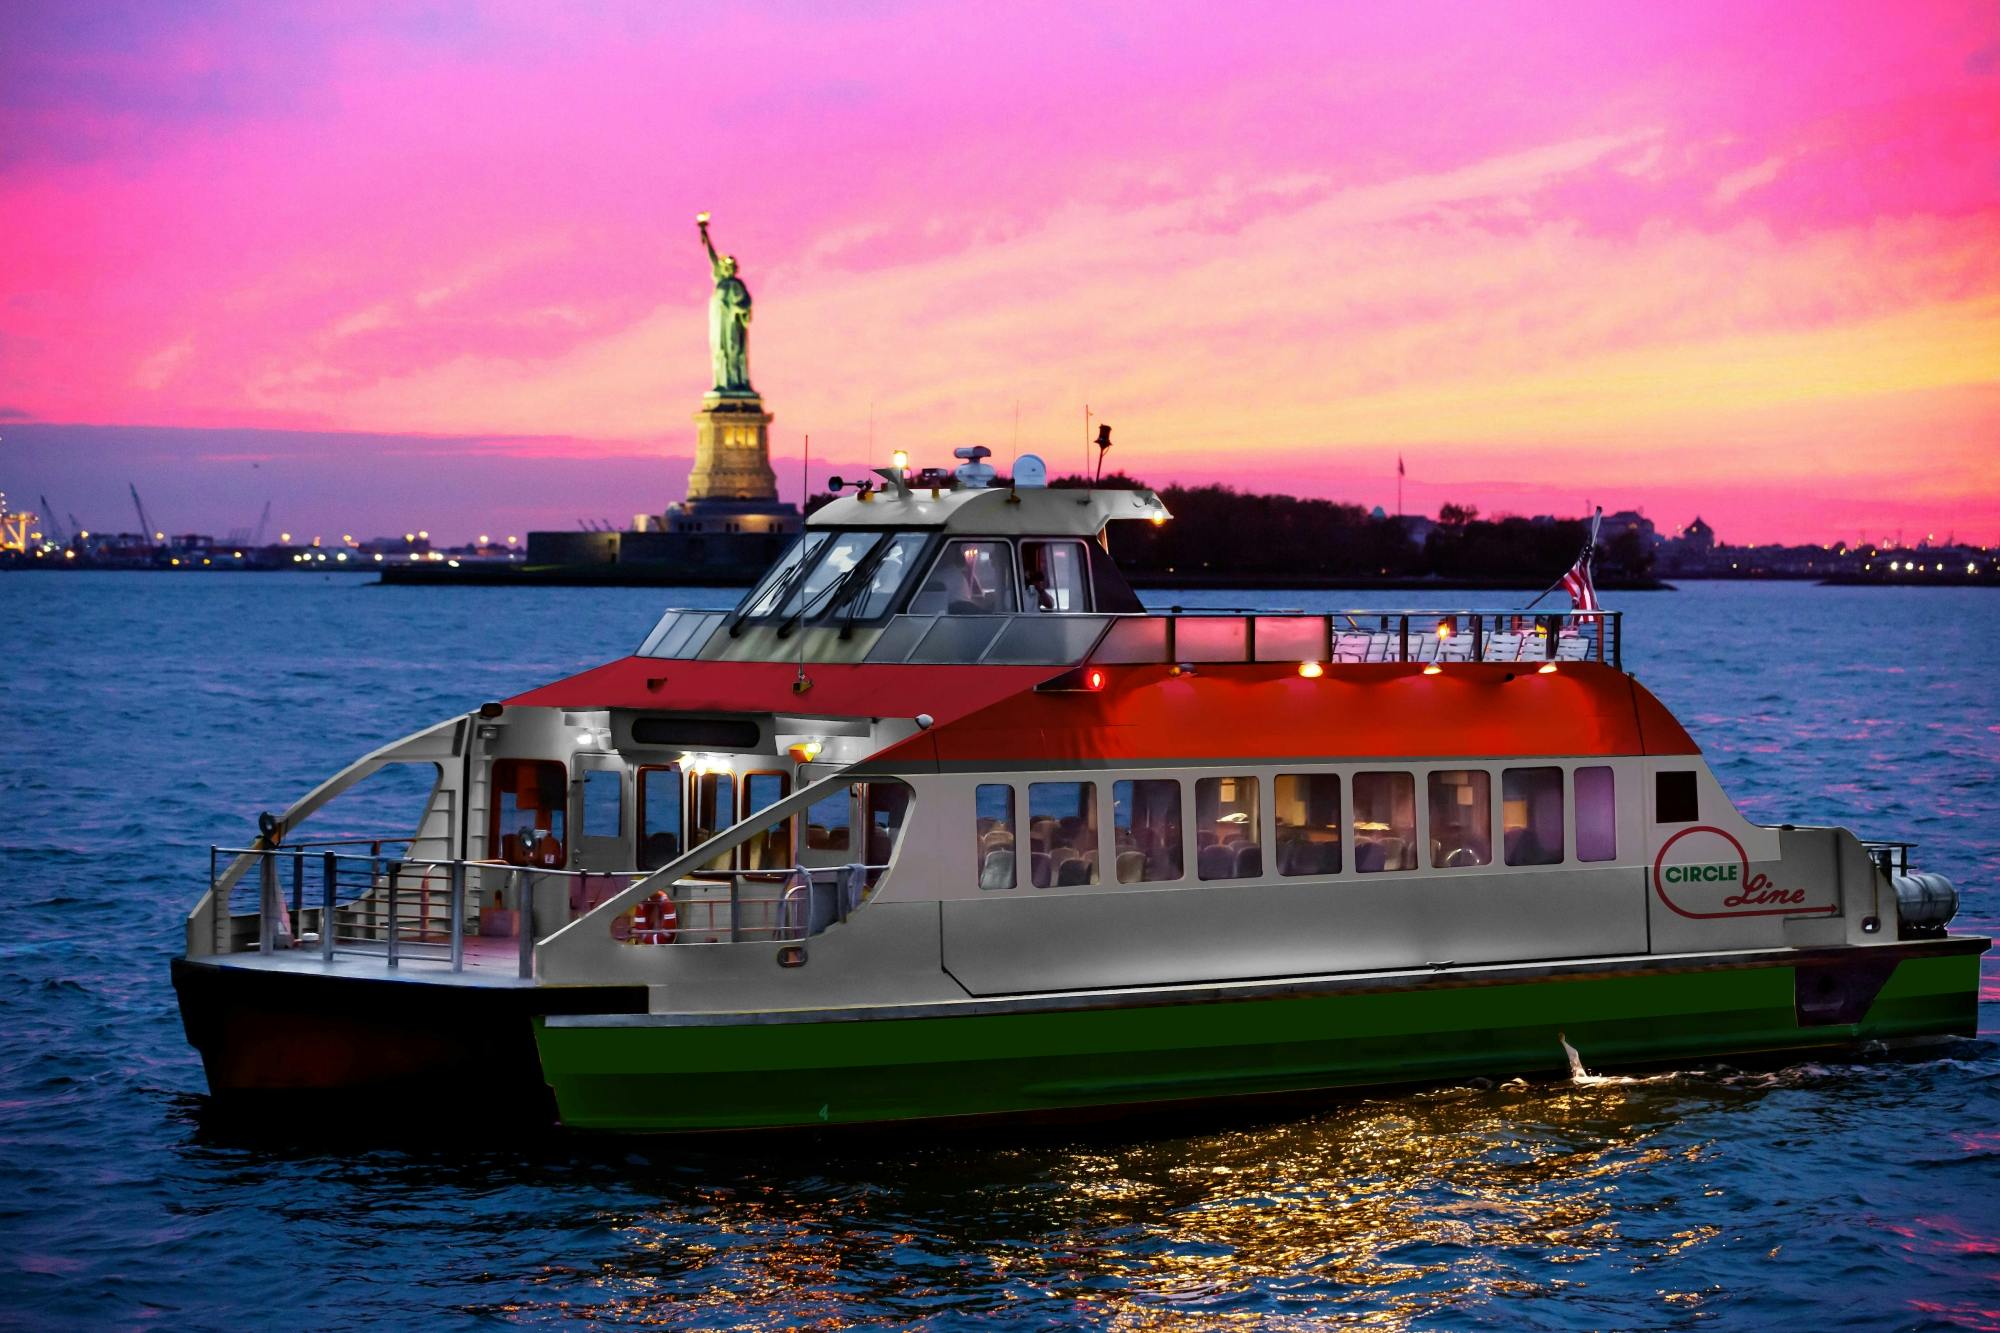 Statue of Liberty Sunset Cruise